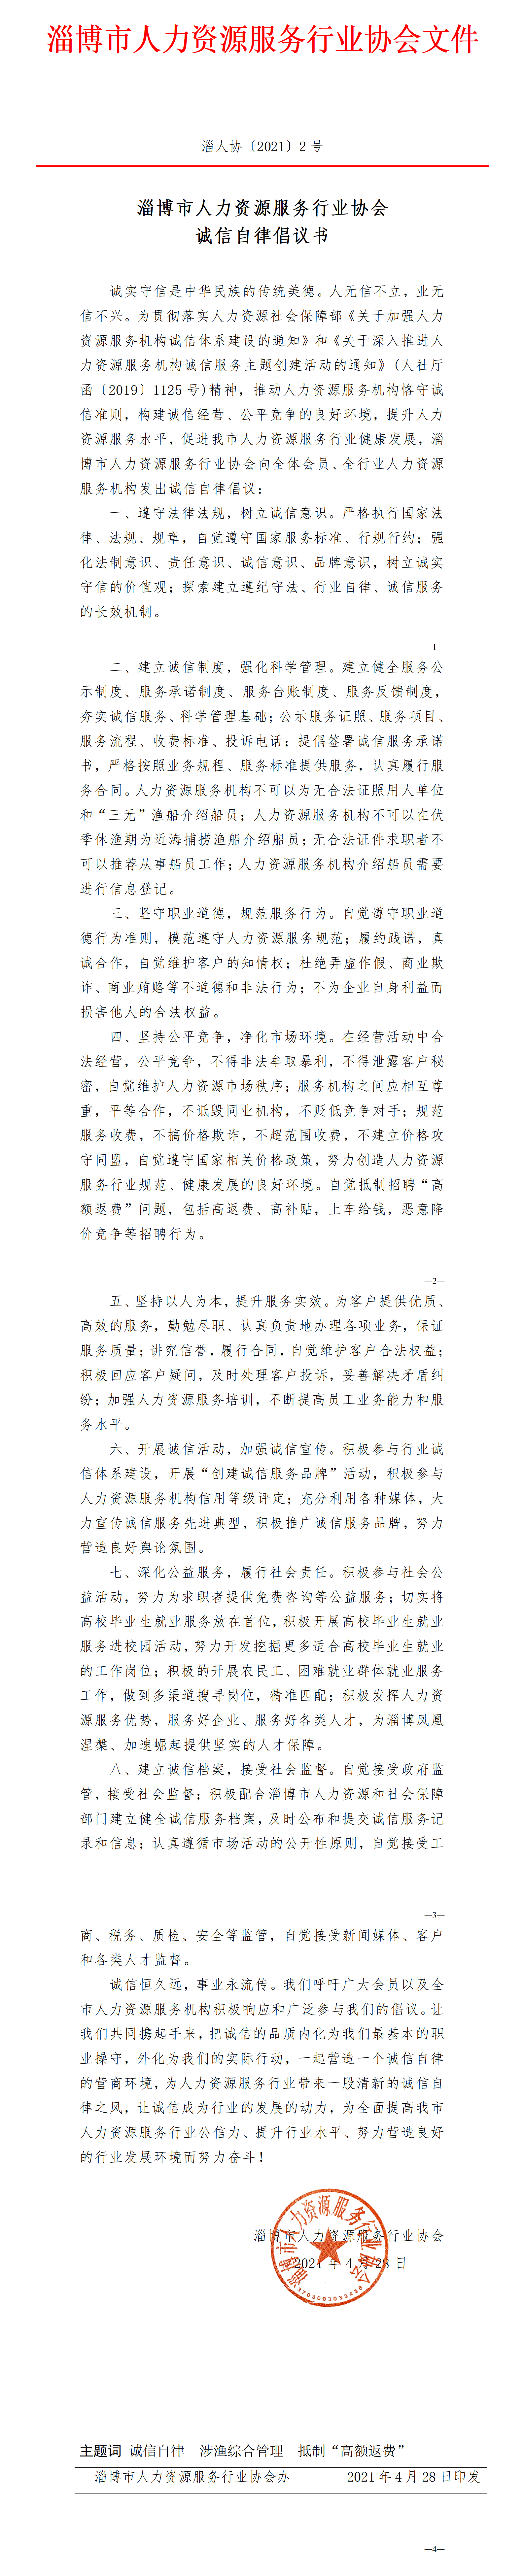 淄博市人力资源服务行业协会诚信自律倡议书 （2021新修订)